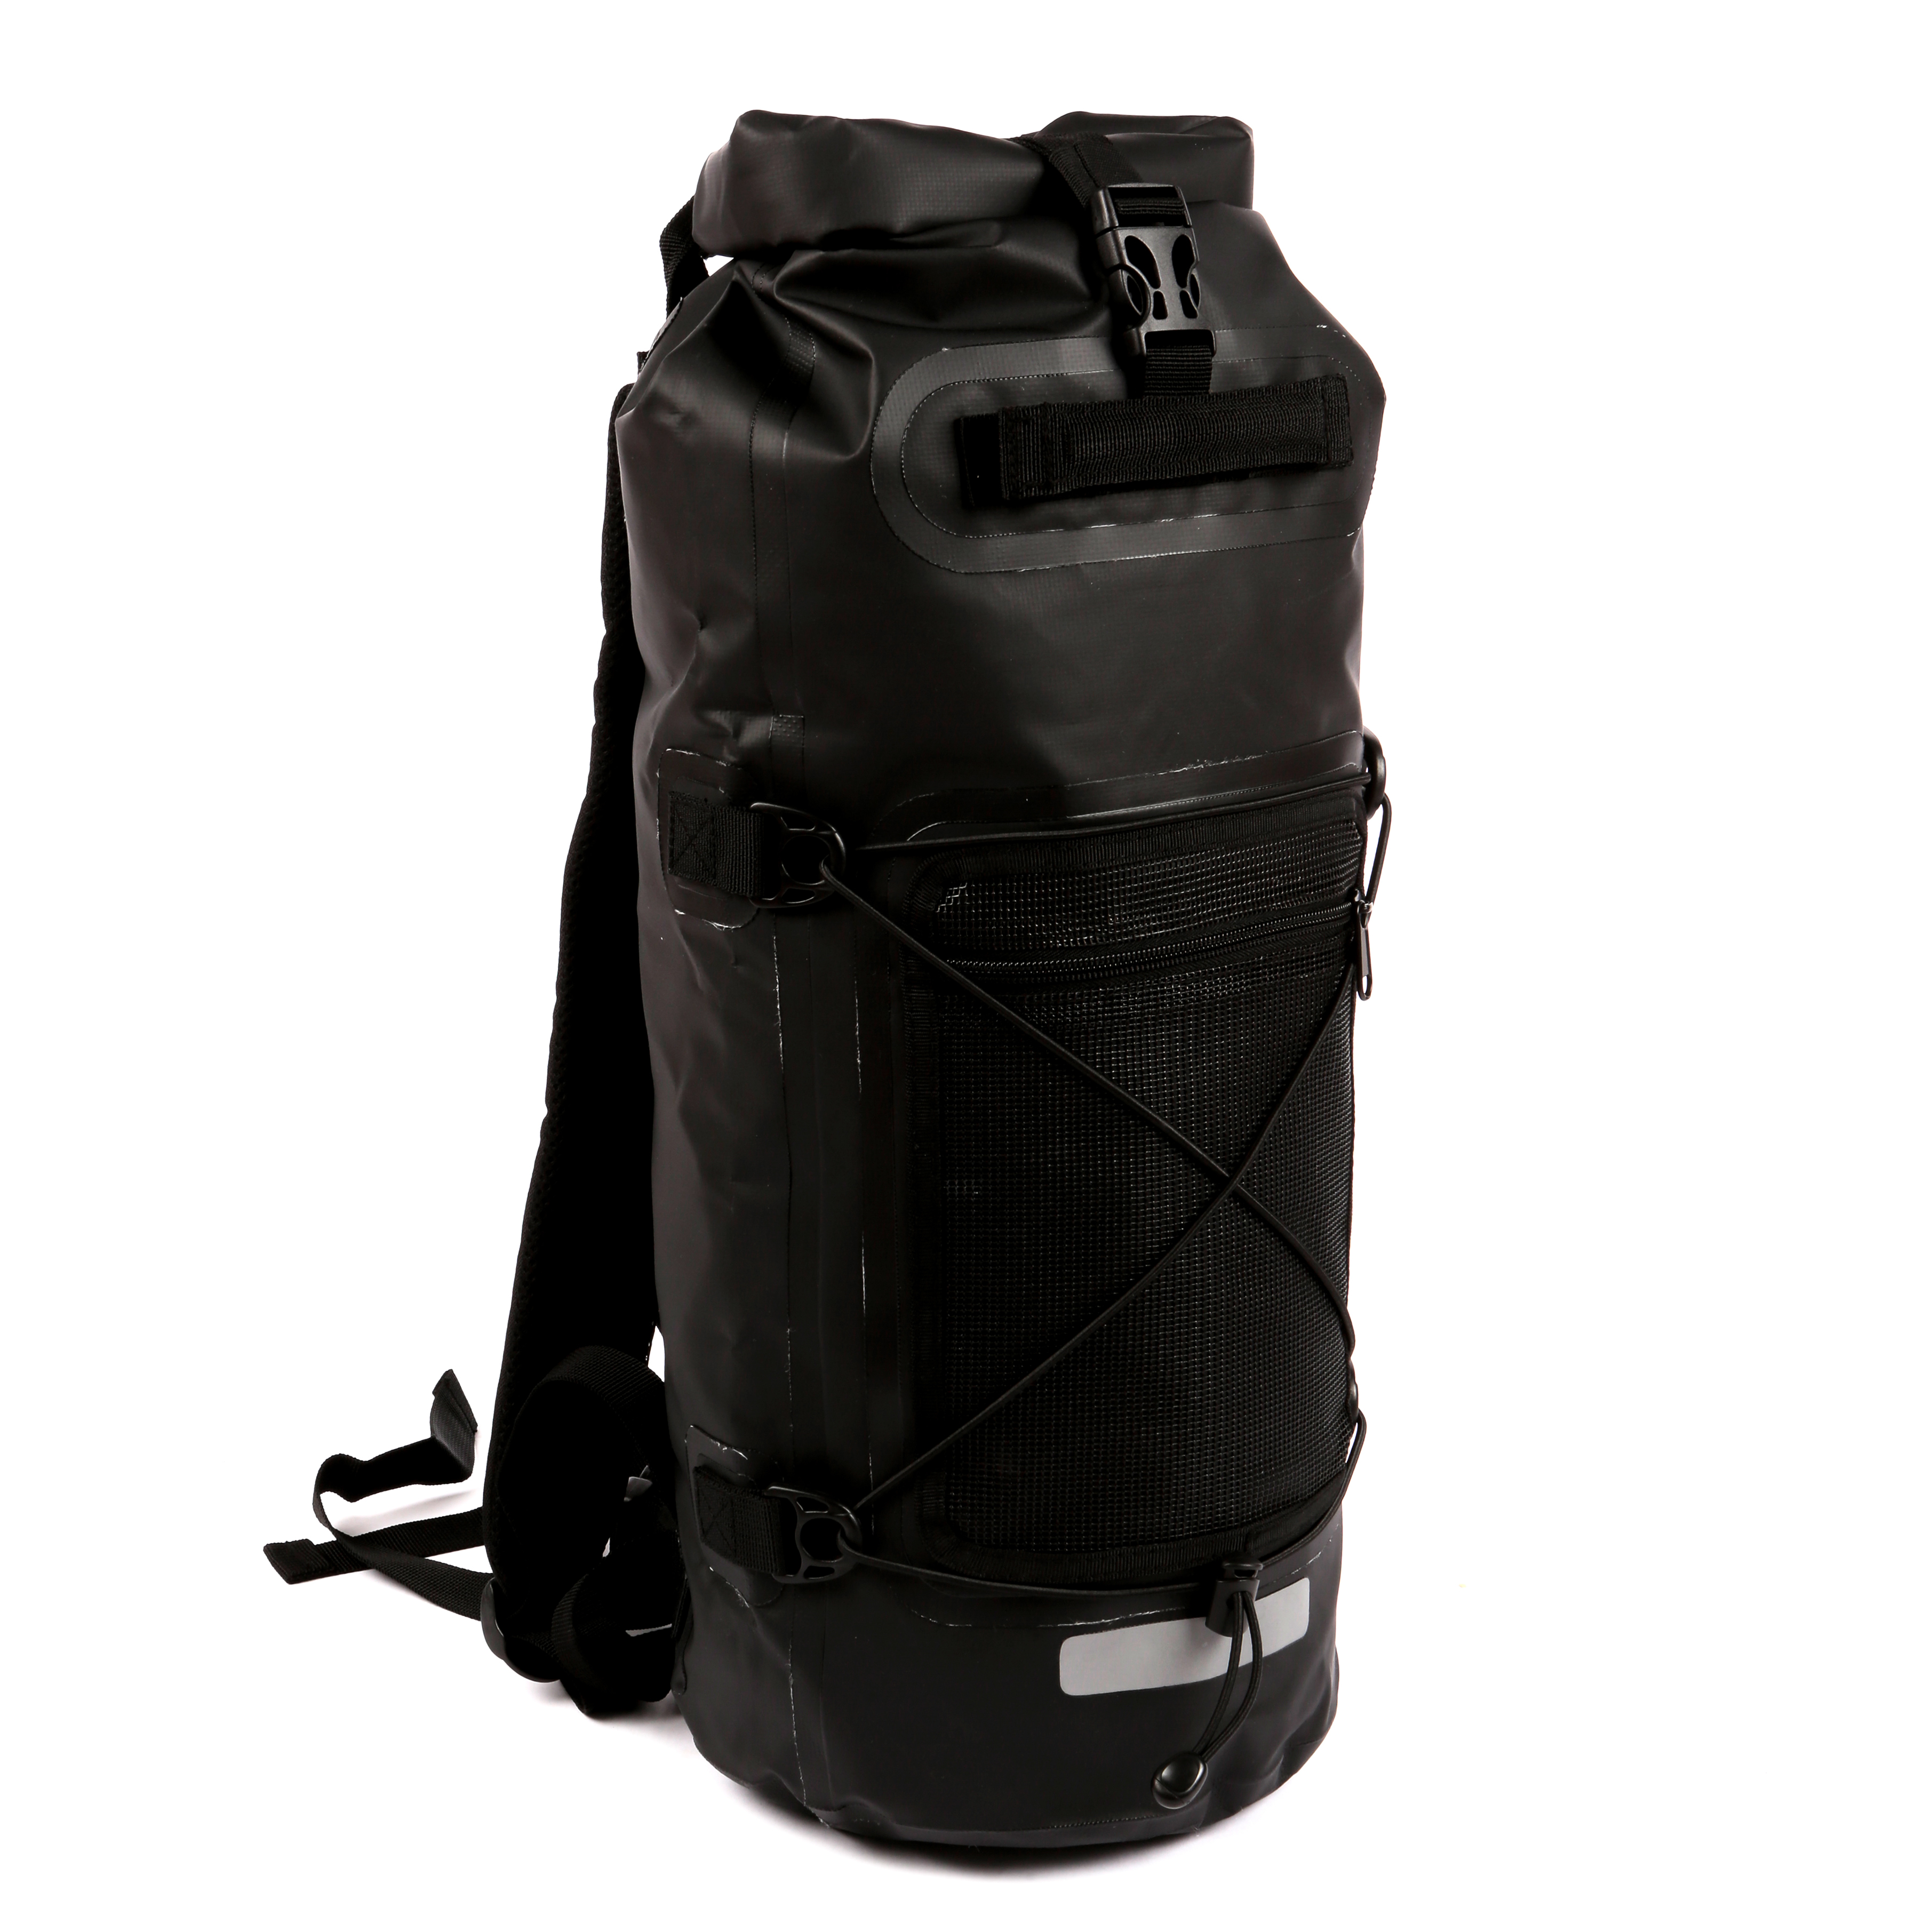 5 x Dry Bag Backpack 28L (UNBRANDED)